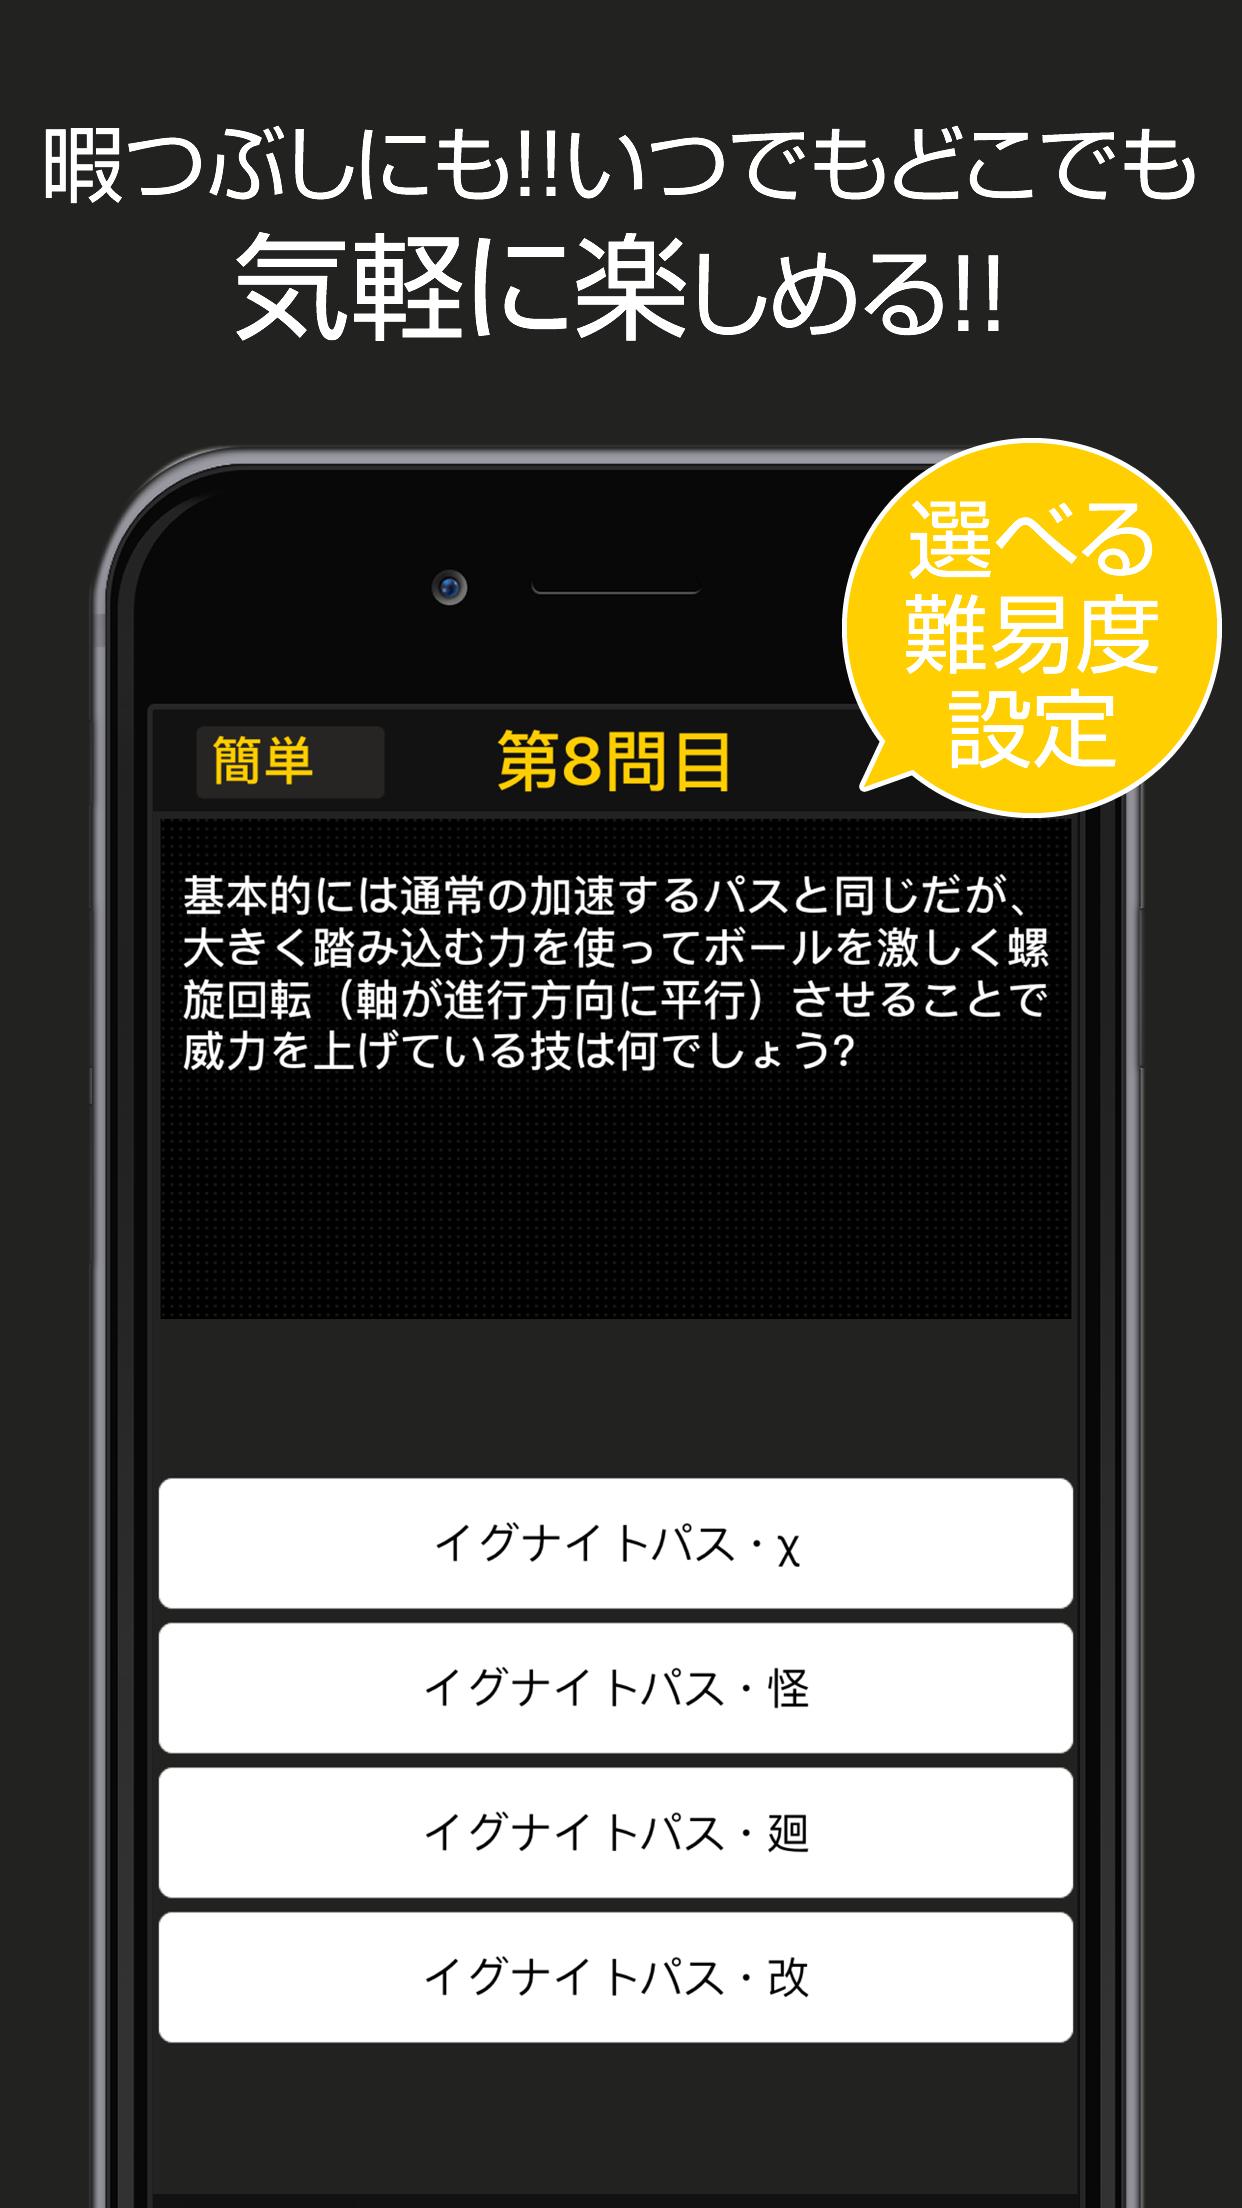 黒子のバスケver 四択クイズ For Android Apk Download